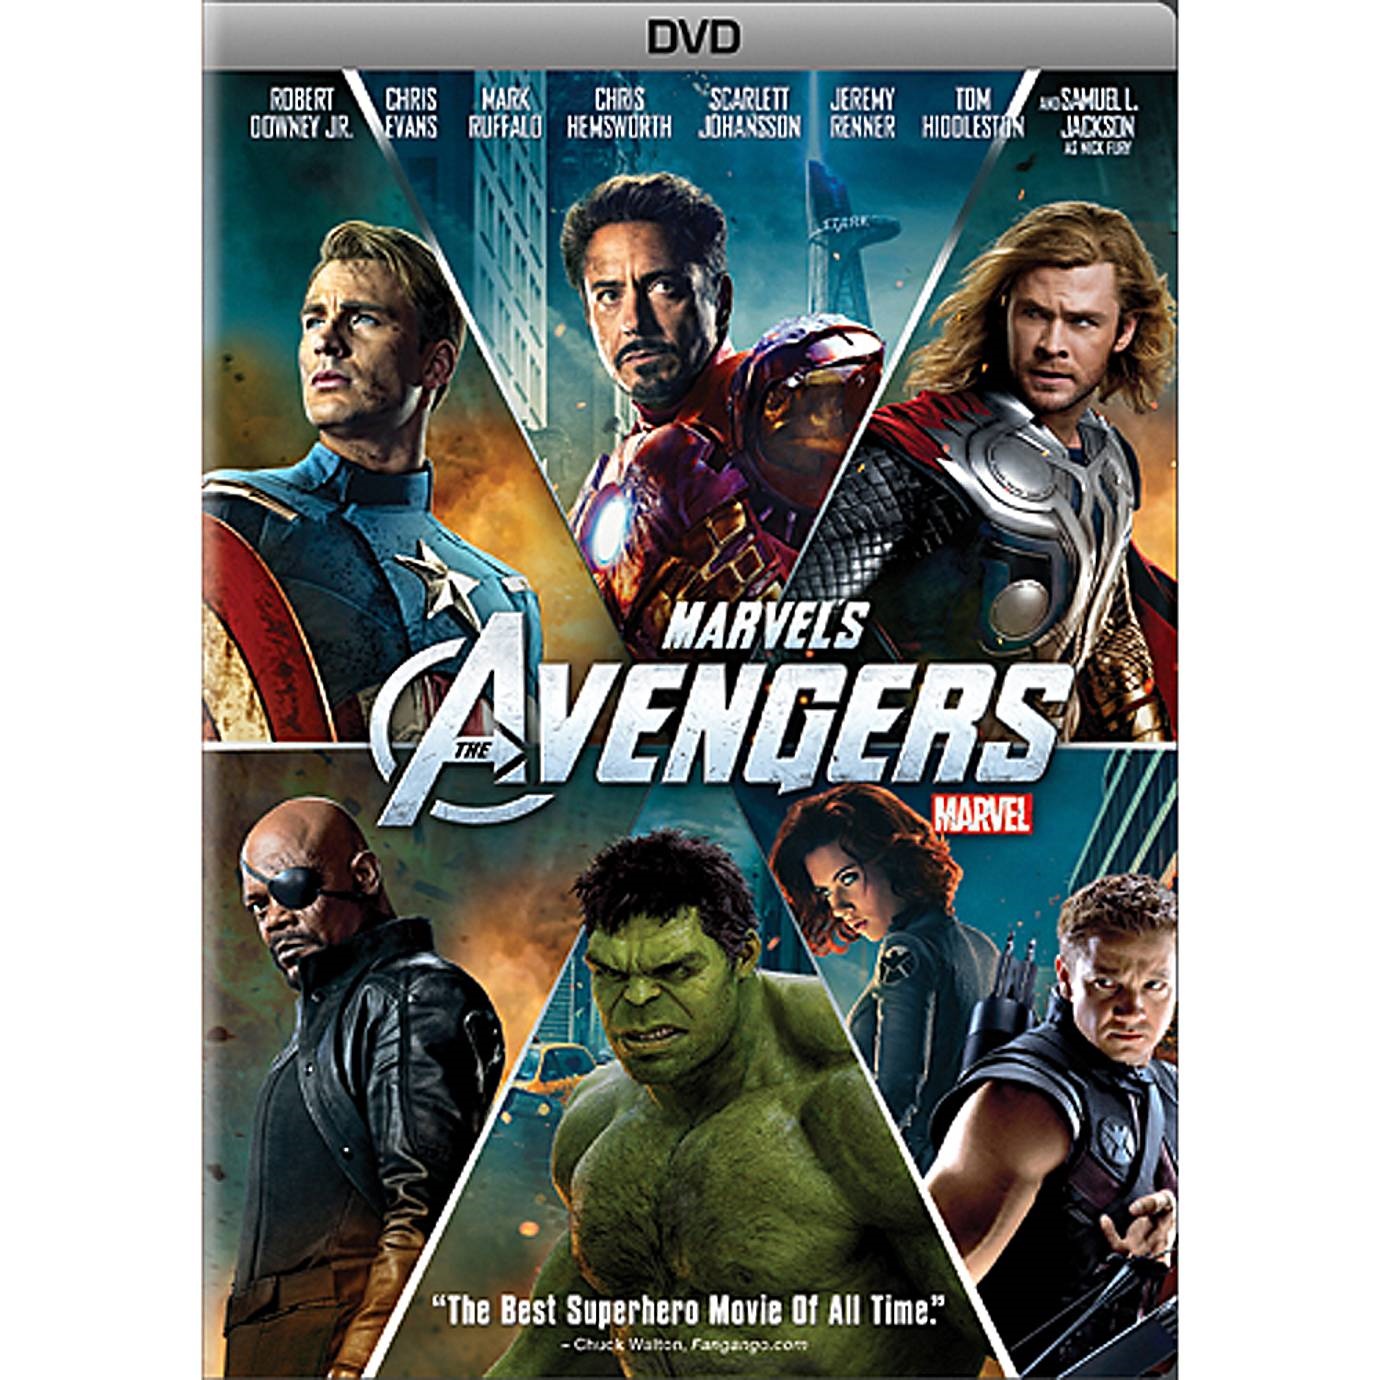 The Avengers (2012) starring Robert Downey Jr., Chris Evans, Scarlett Johansson, …